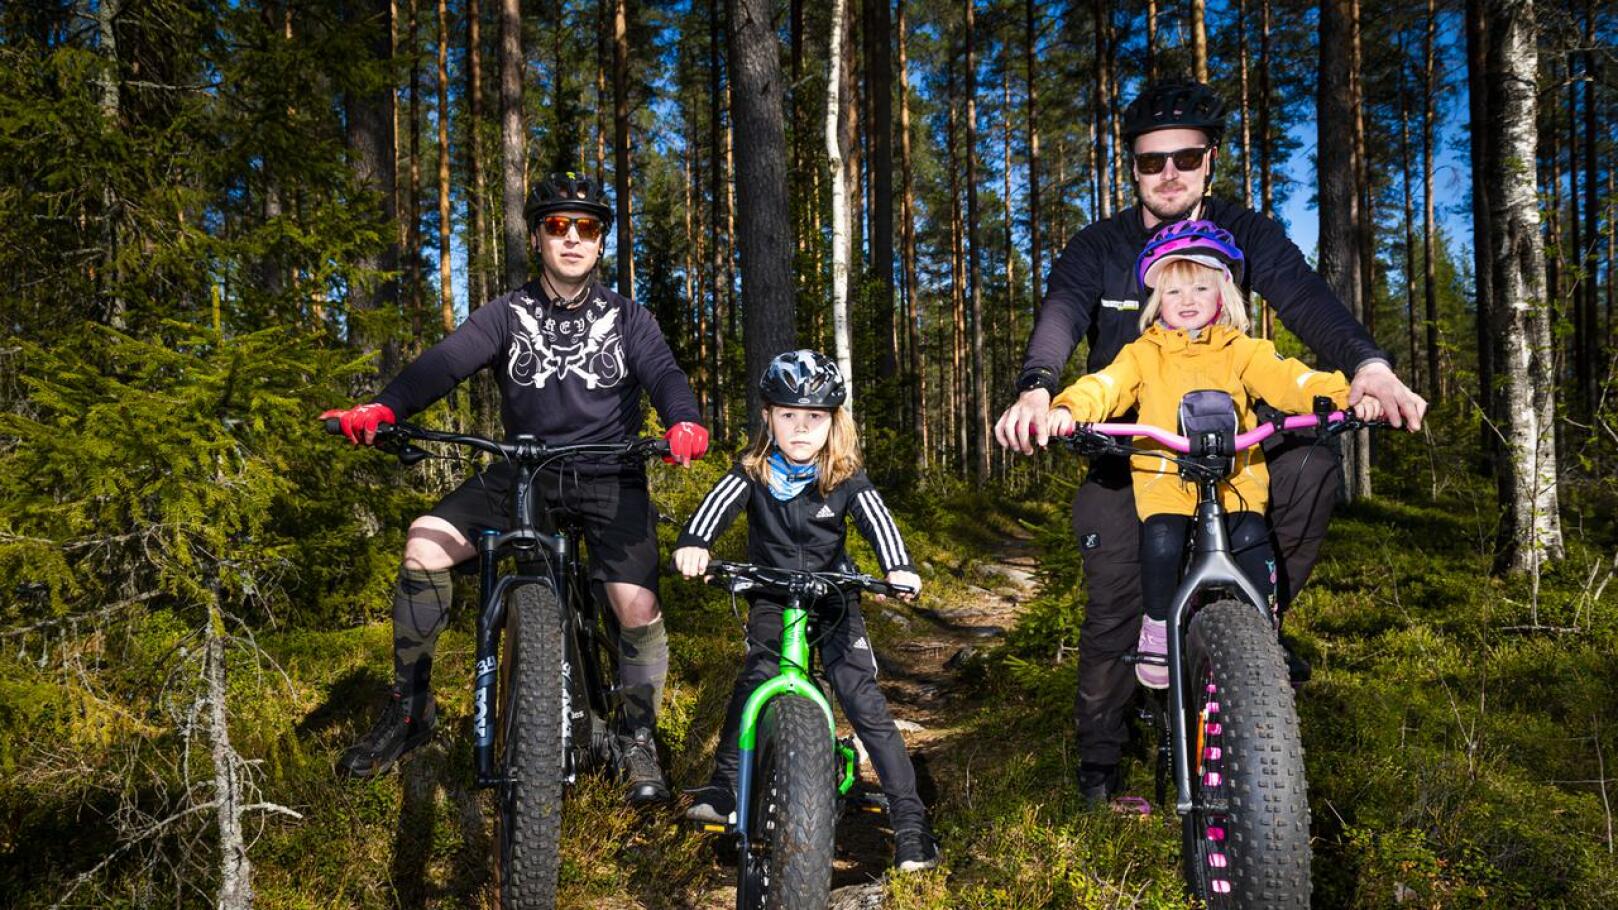 Kannuksen maastoissa voivat pyöräillä kaikenikäiset kaikenlaisilla maastopyörillä. Pasi Roukala, Sakke Roukala sekä Niko ja Vilma Laitinen viihtyvät ahkerasti kotikaupungin poluilla.